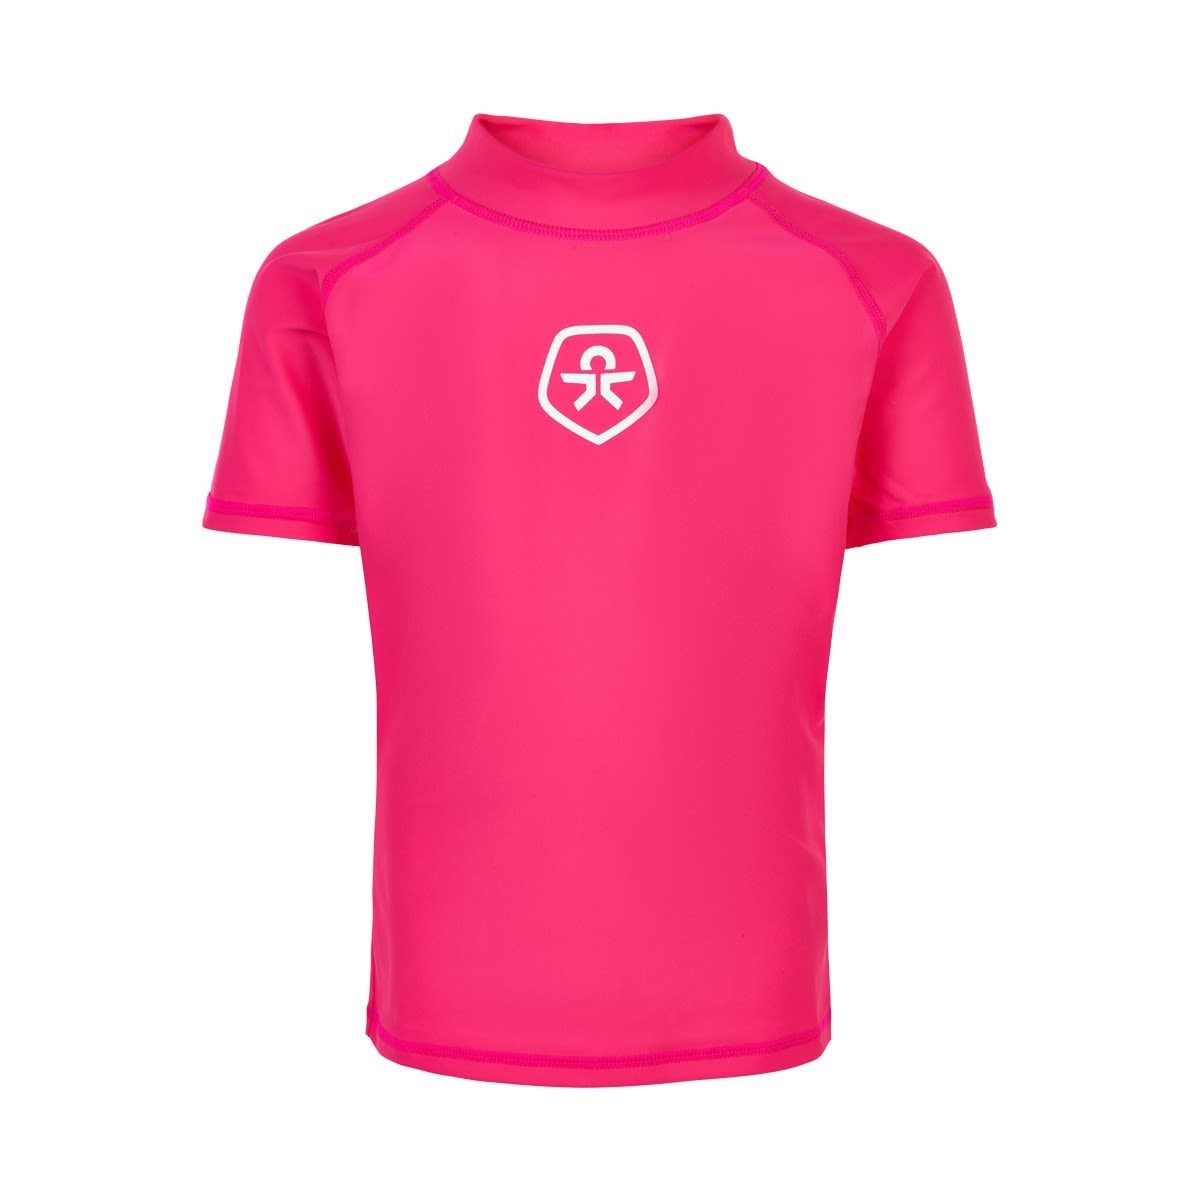 Color Solid Badeanzug Kids Oberteil Kinder T-shirt Yarrow Kids KIDS Pink COLOR